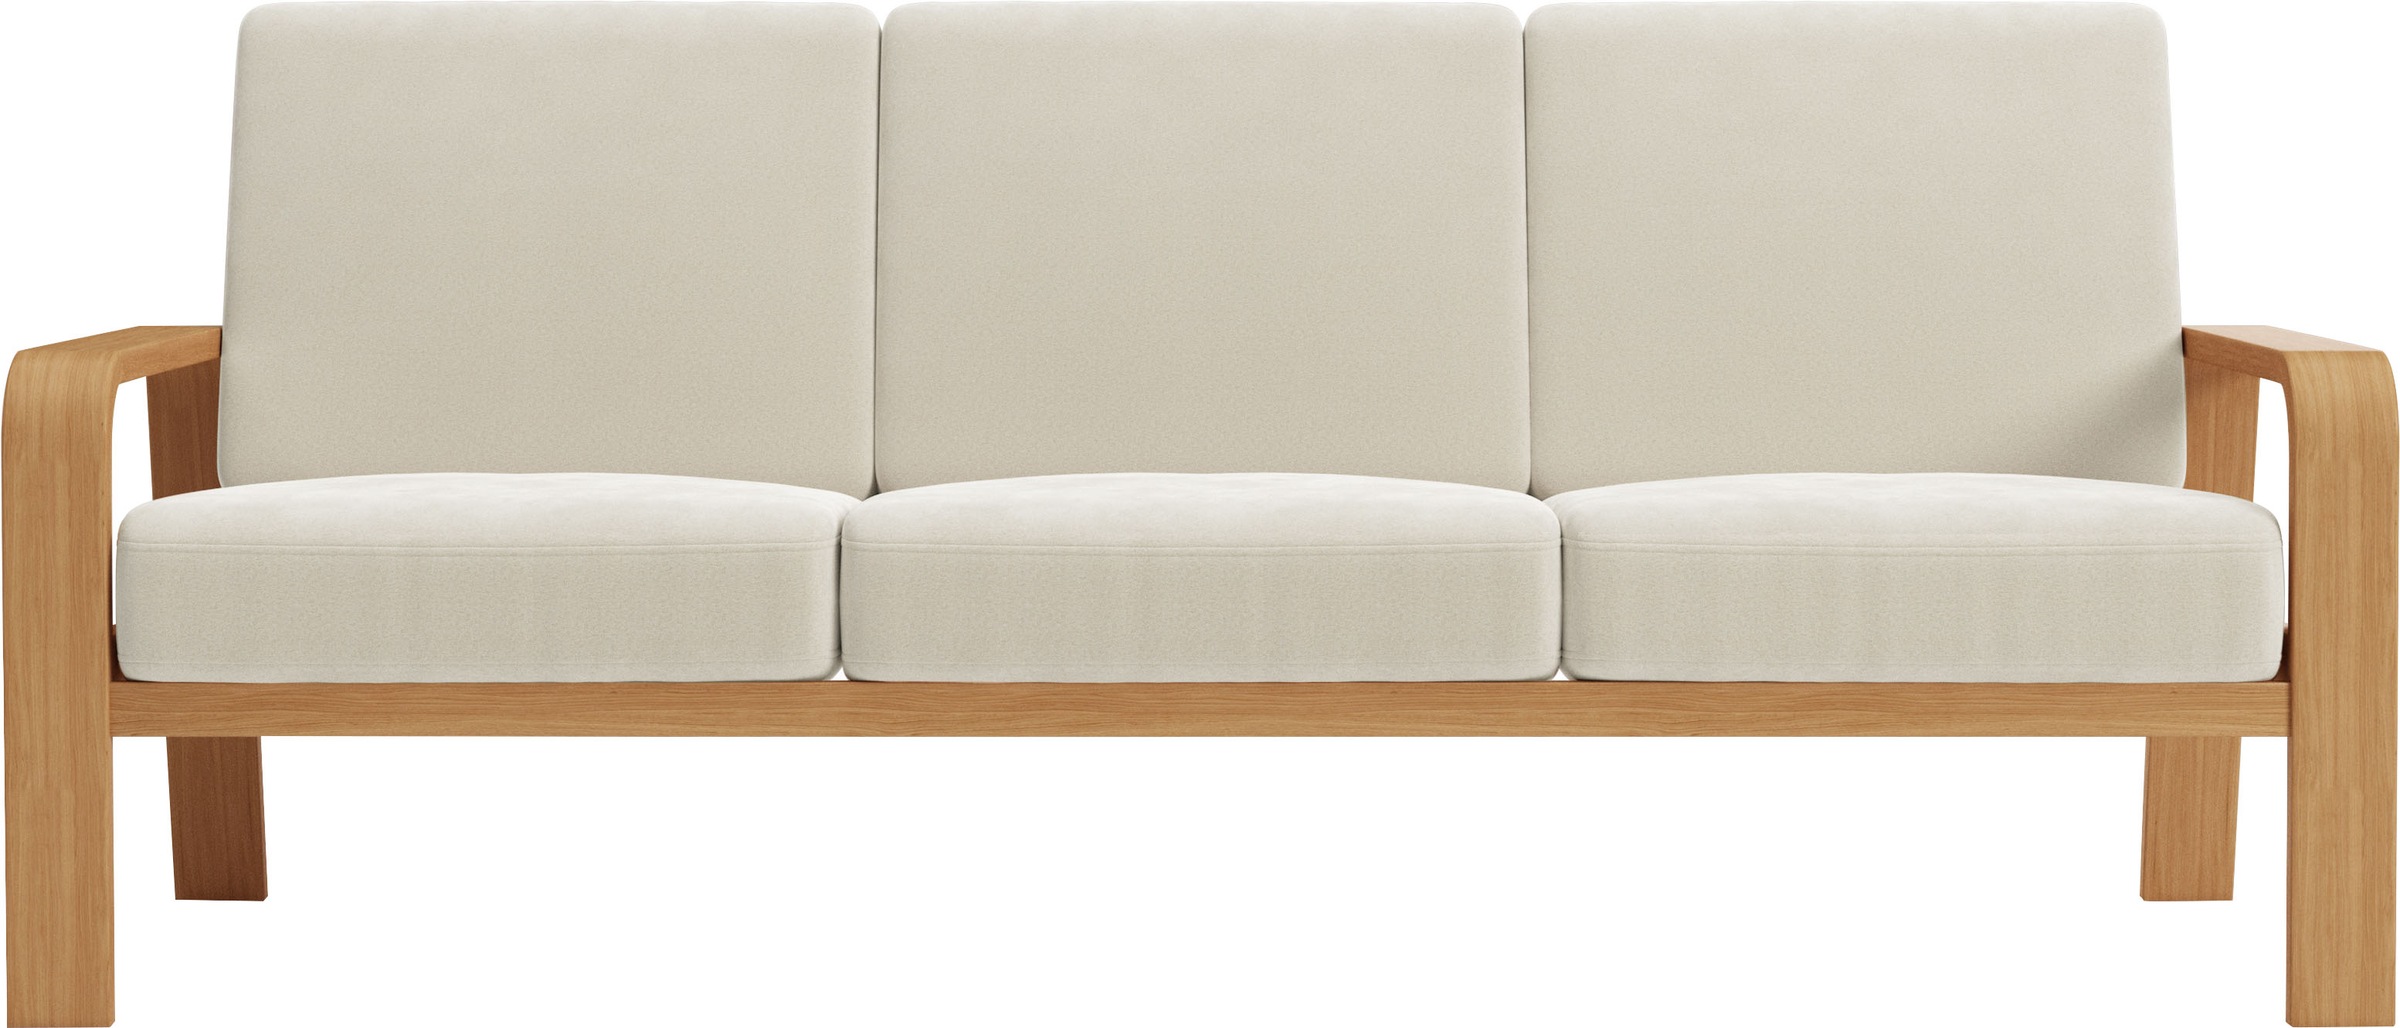 sit&more 3-Sitzer »Kolding«, Armlehnen aus eichefarbigem Buchenholz, verschiedene Bezüge und Farben